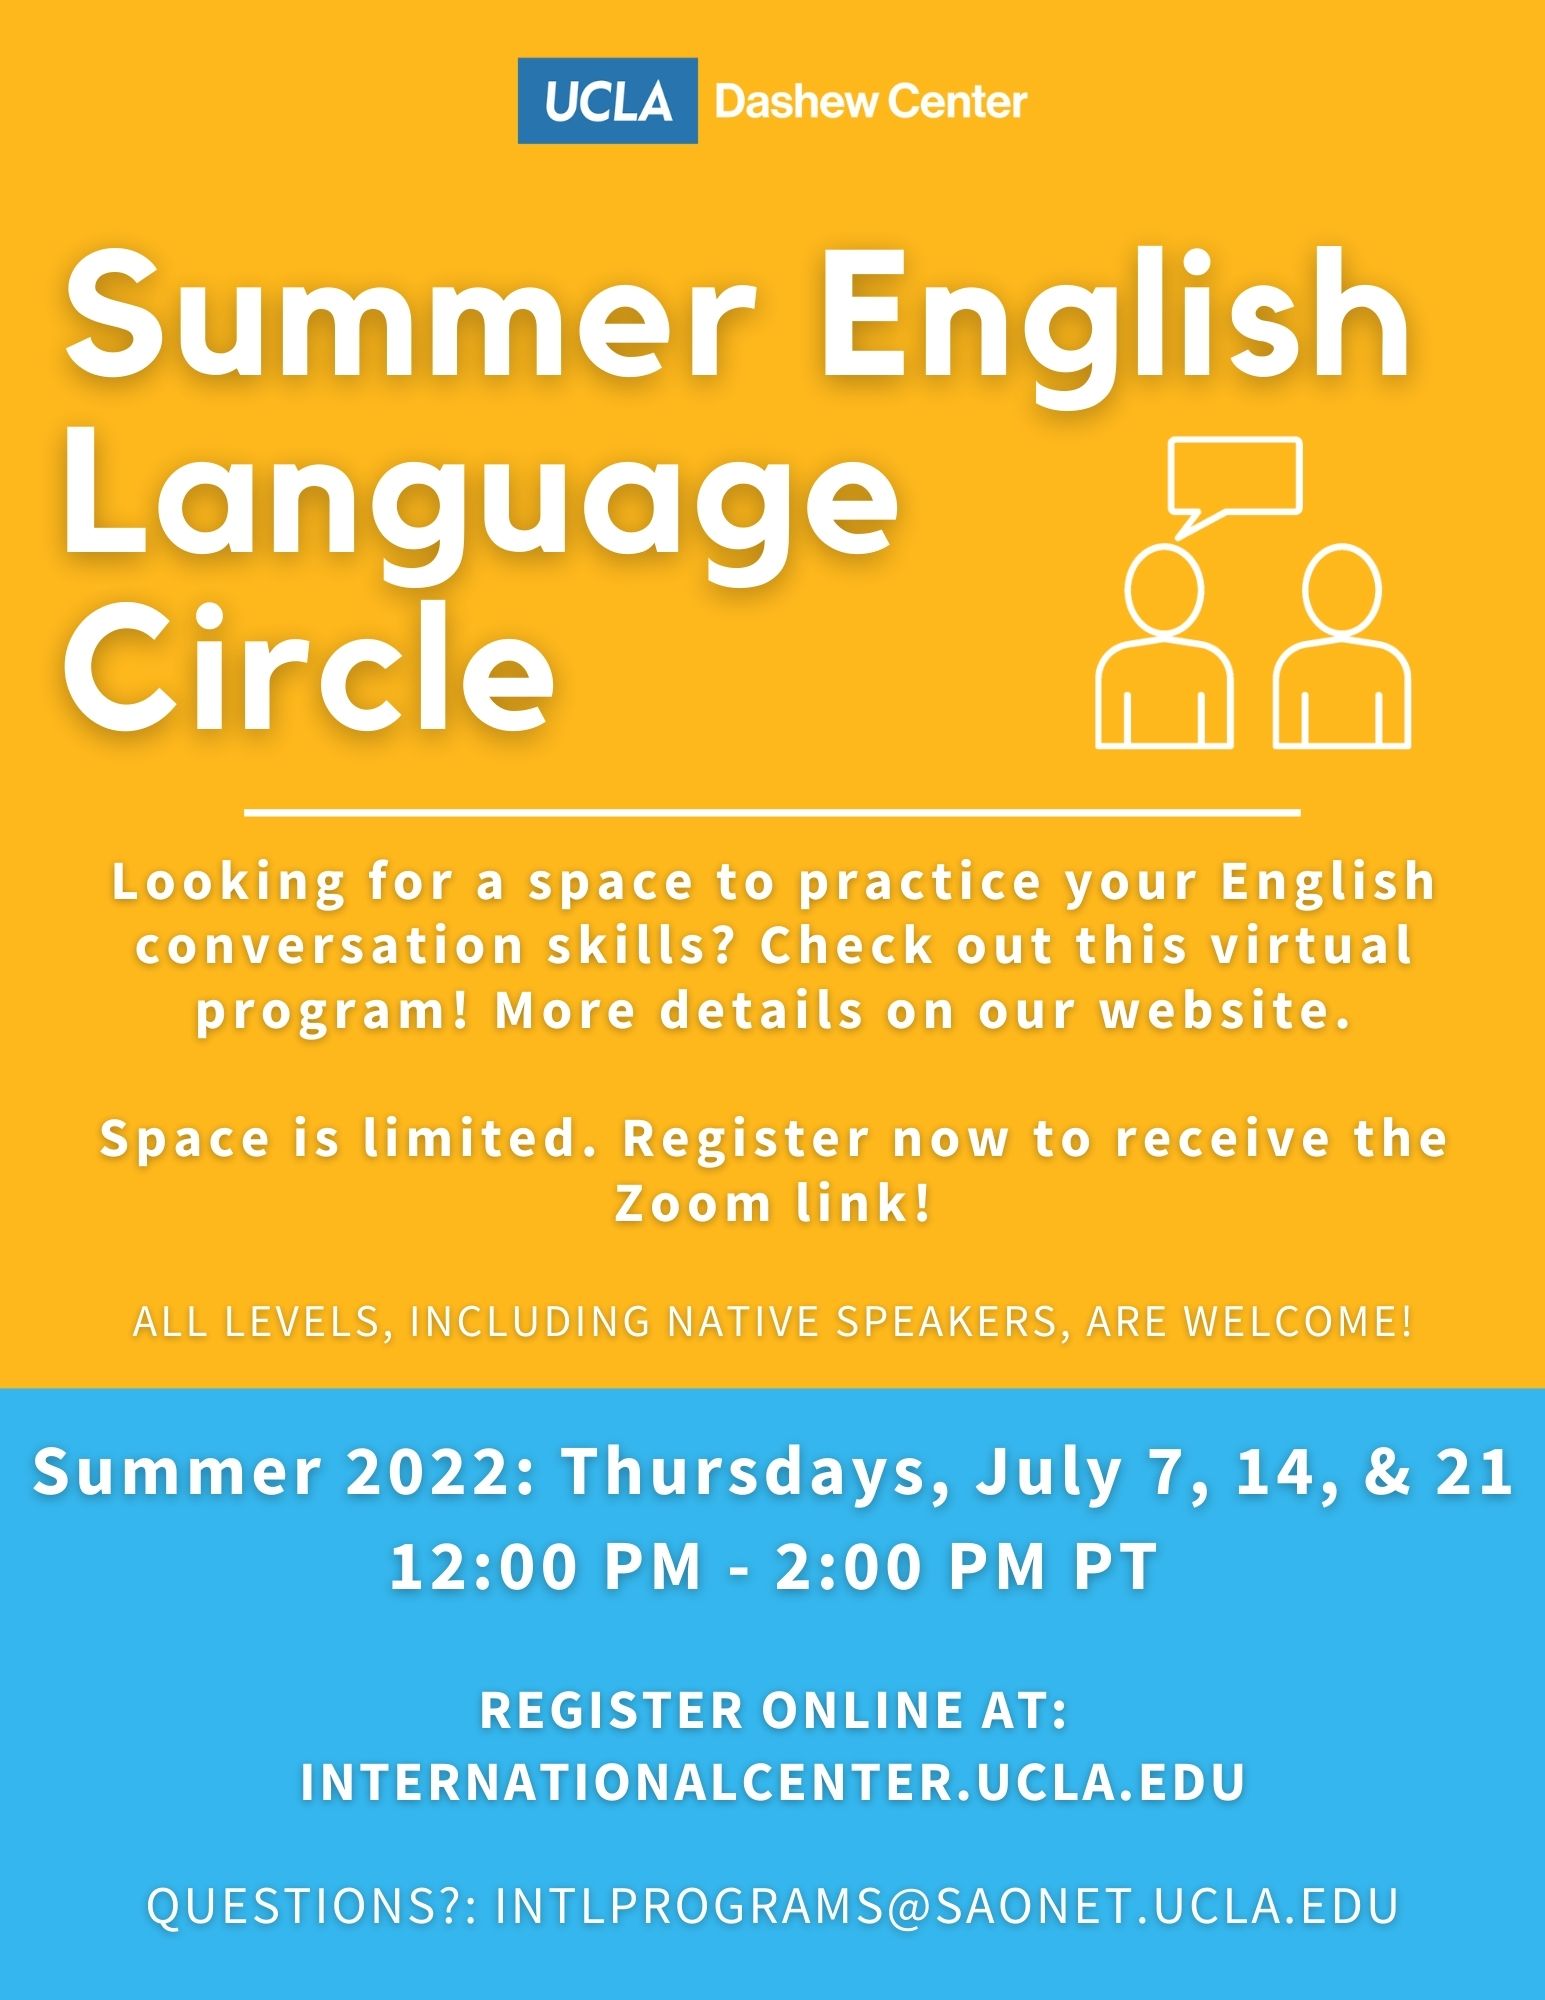 Summer 22 English Language Circle flyer